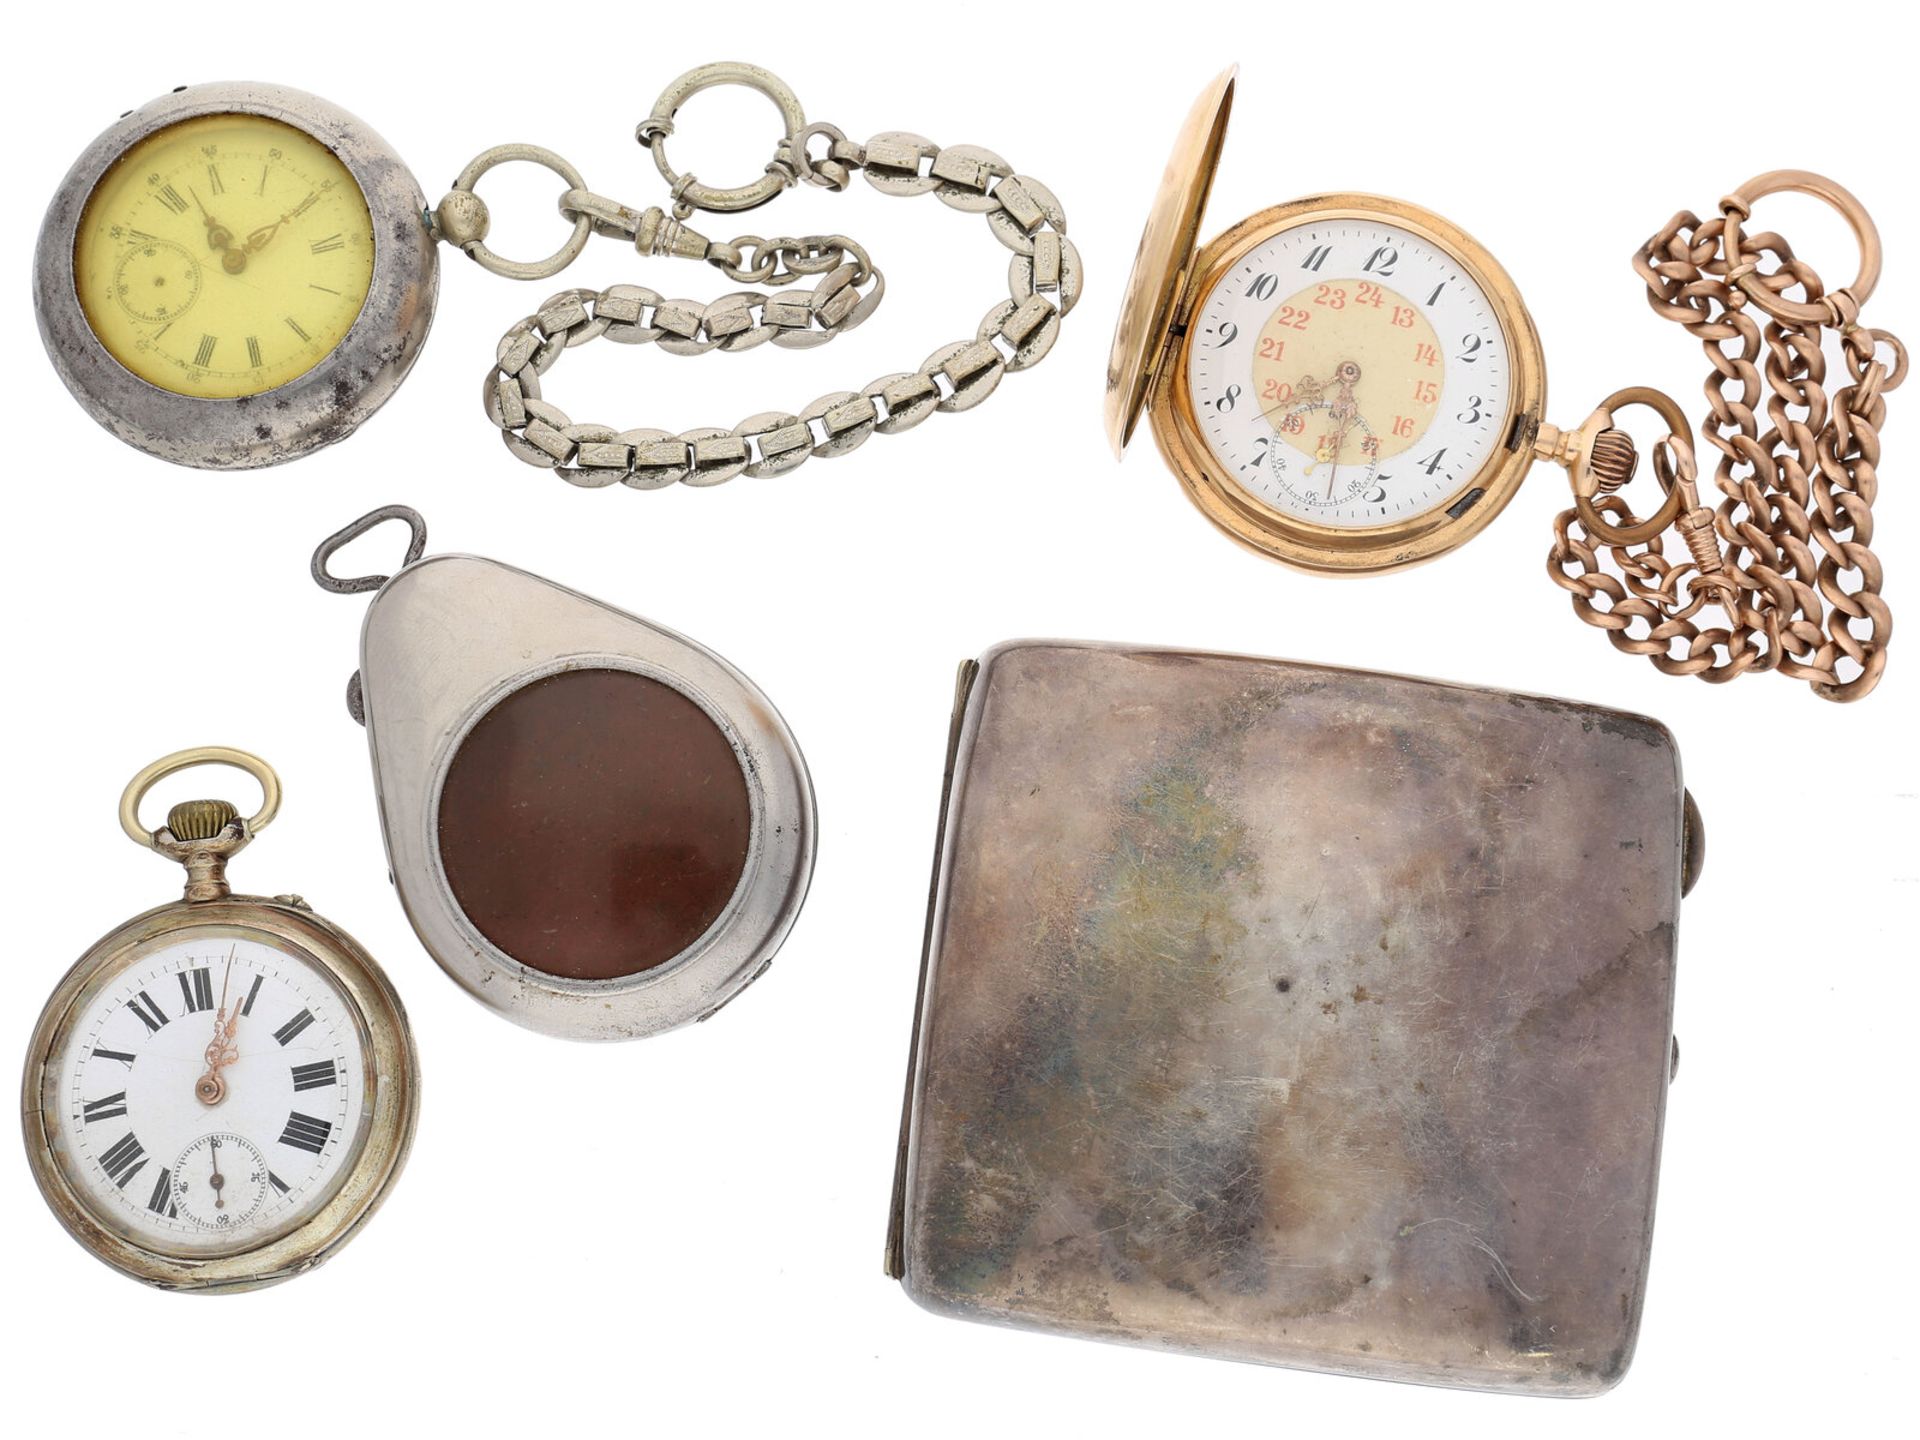 Taschenuhr/Etui: Konvolut von 3 Taschenuhren und einem Zigarettenetui, 1900-1950